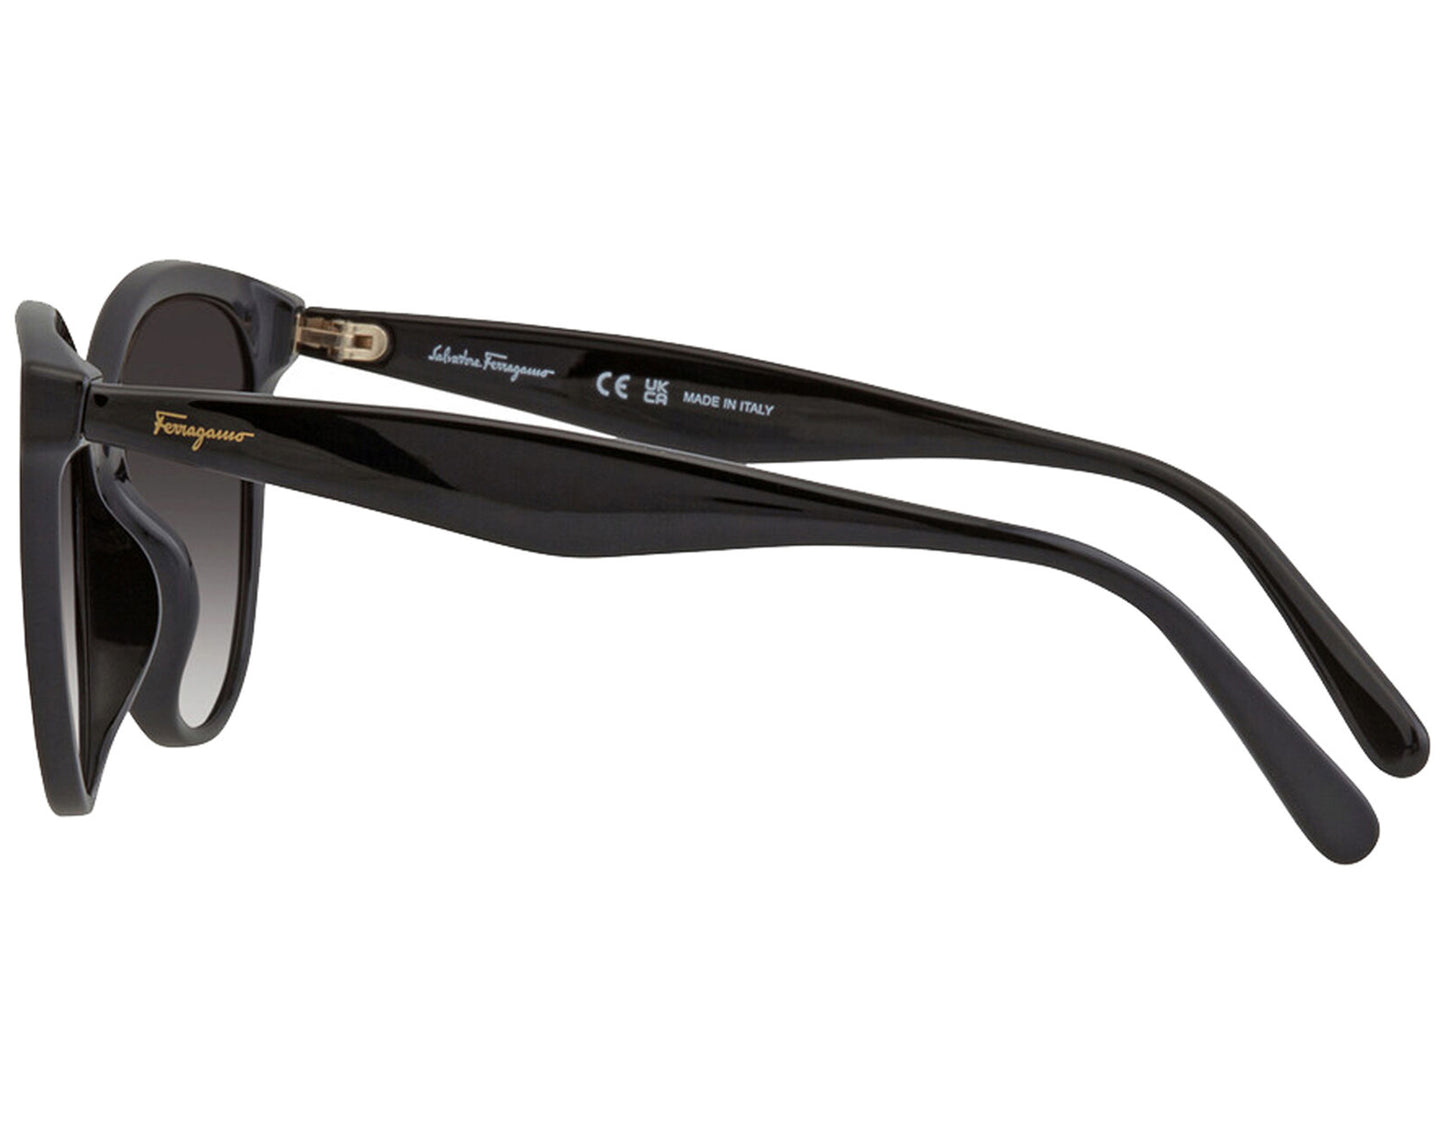 Salvatore Ferragamo SF1073S-001-5417 54mm New Sunglasses